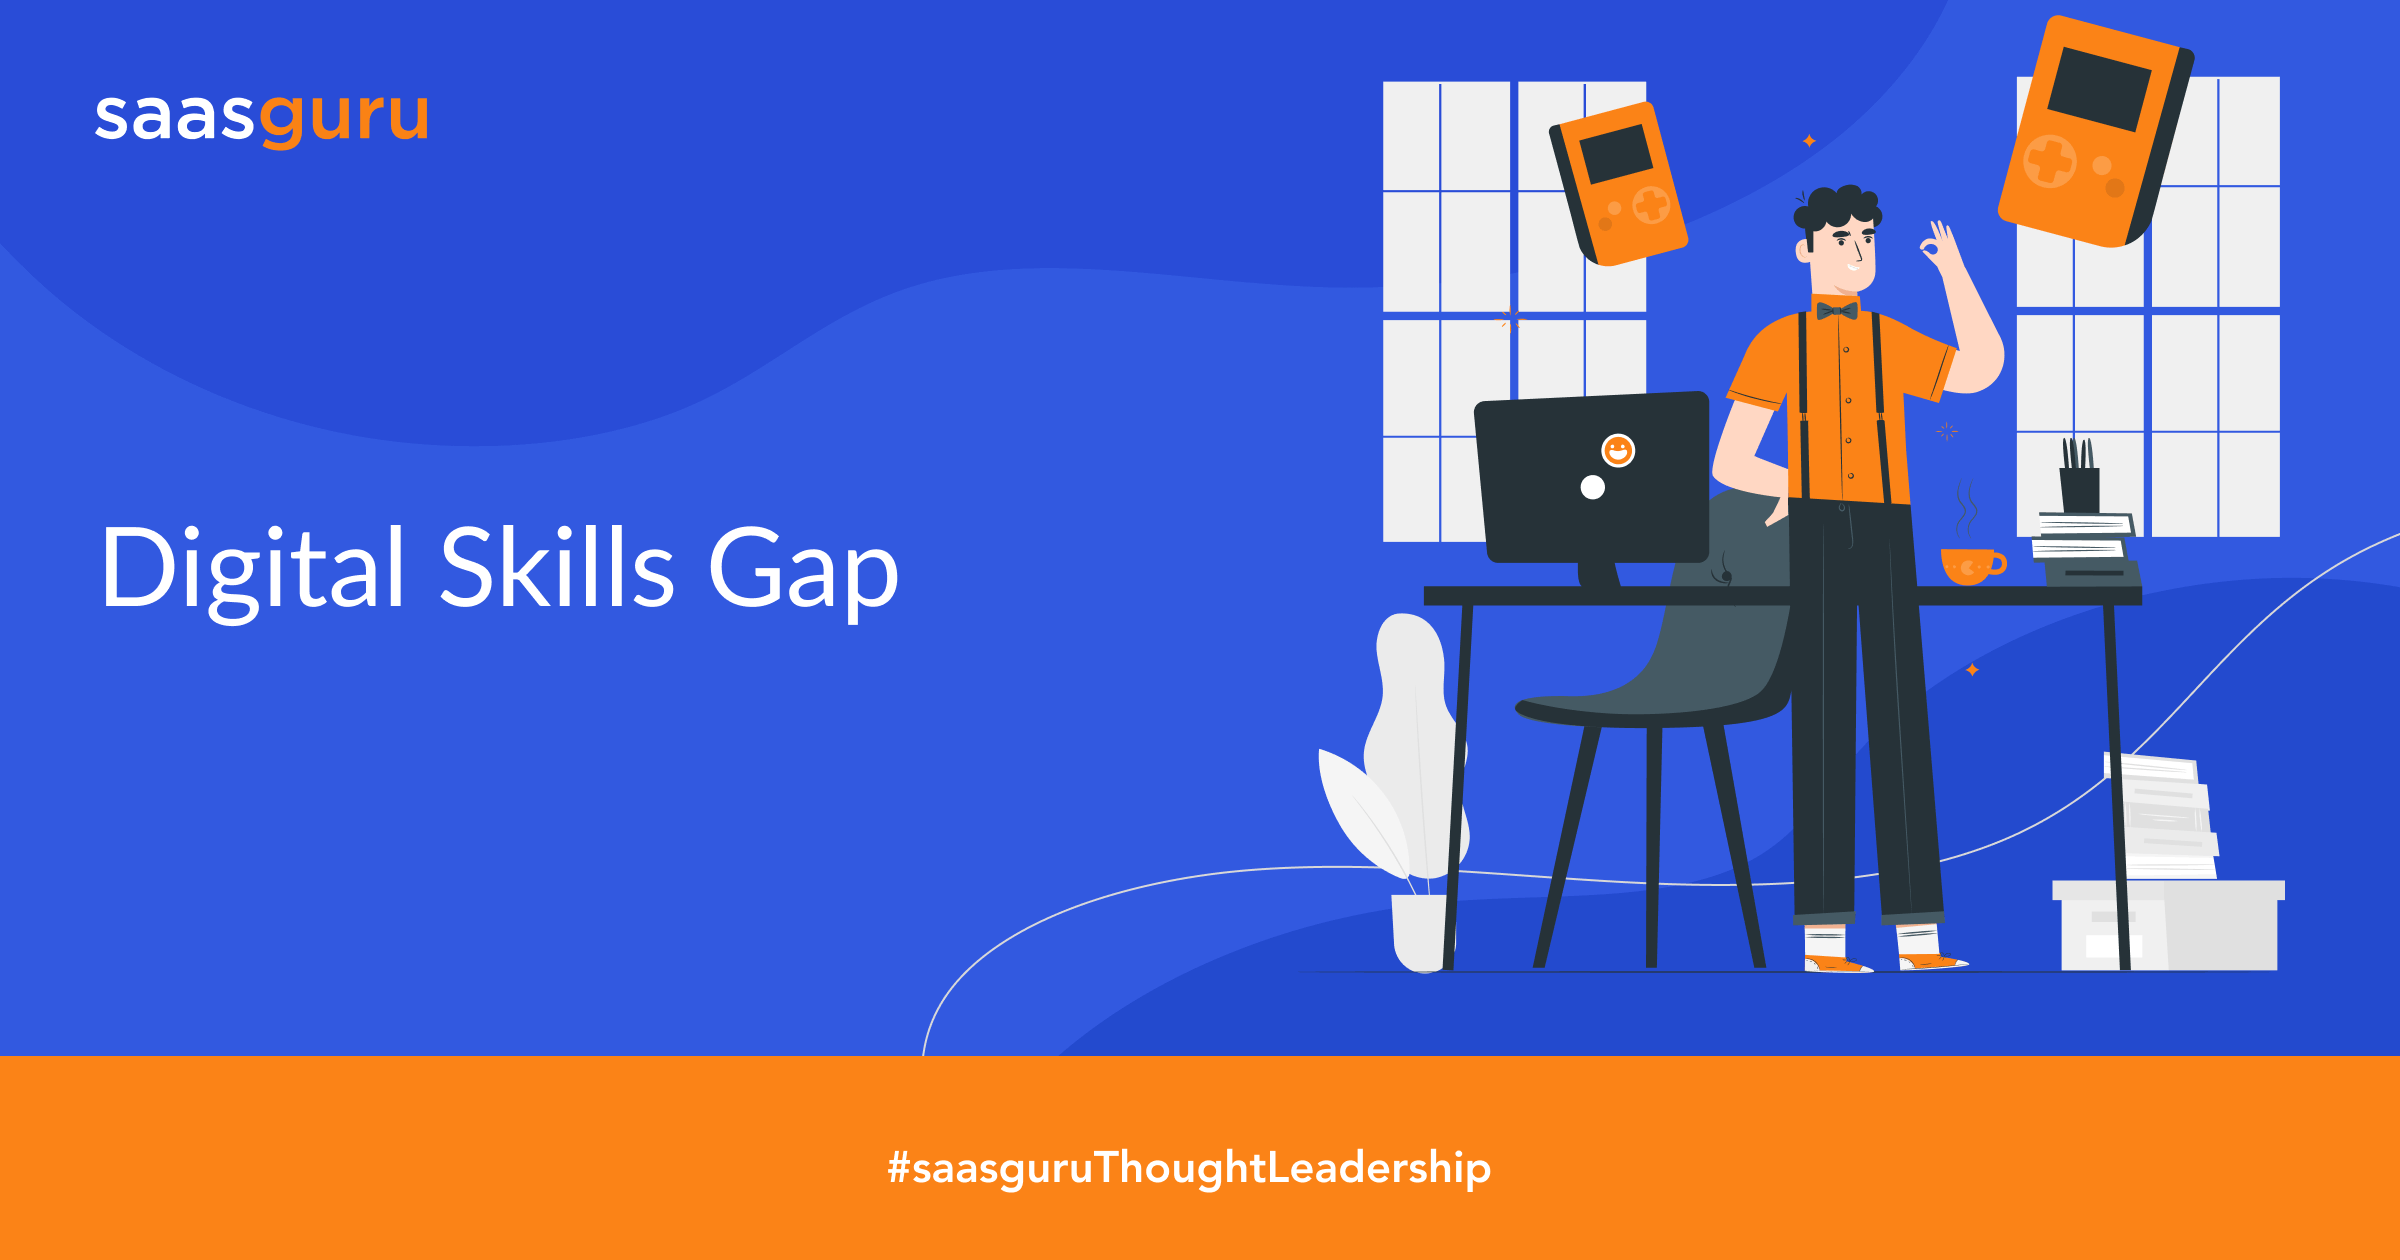 Digital Skills Gap: How to Bridge It?